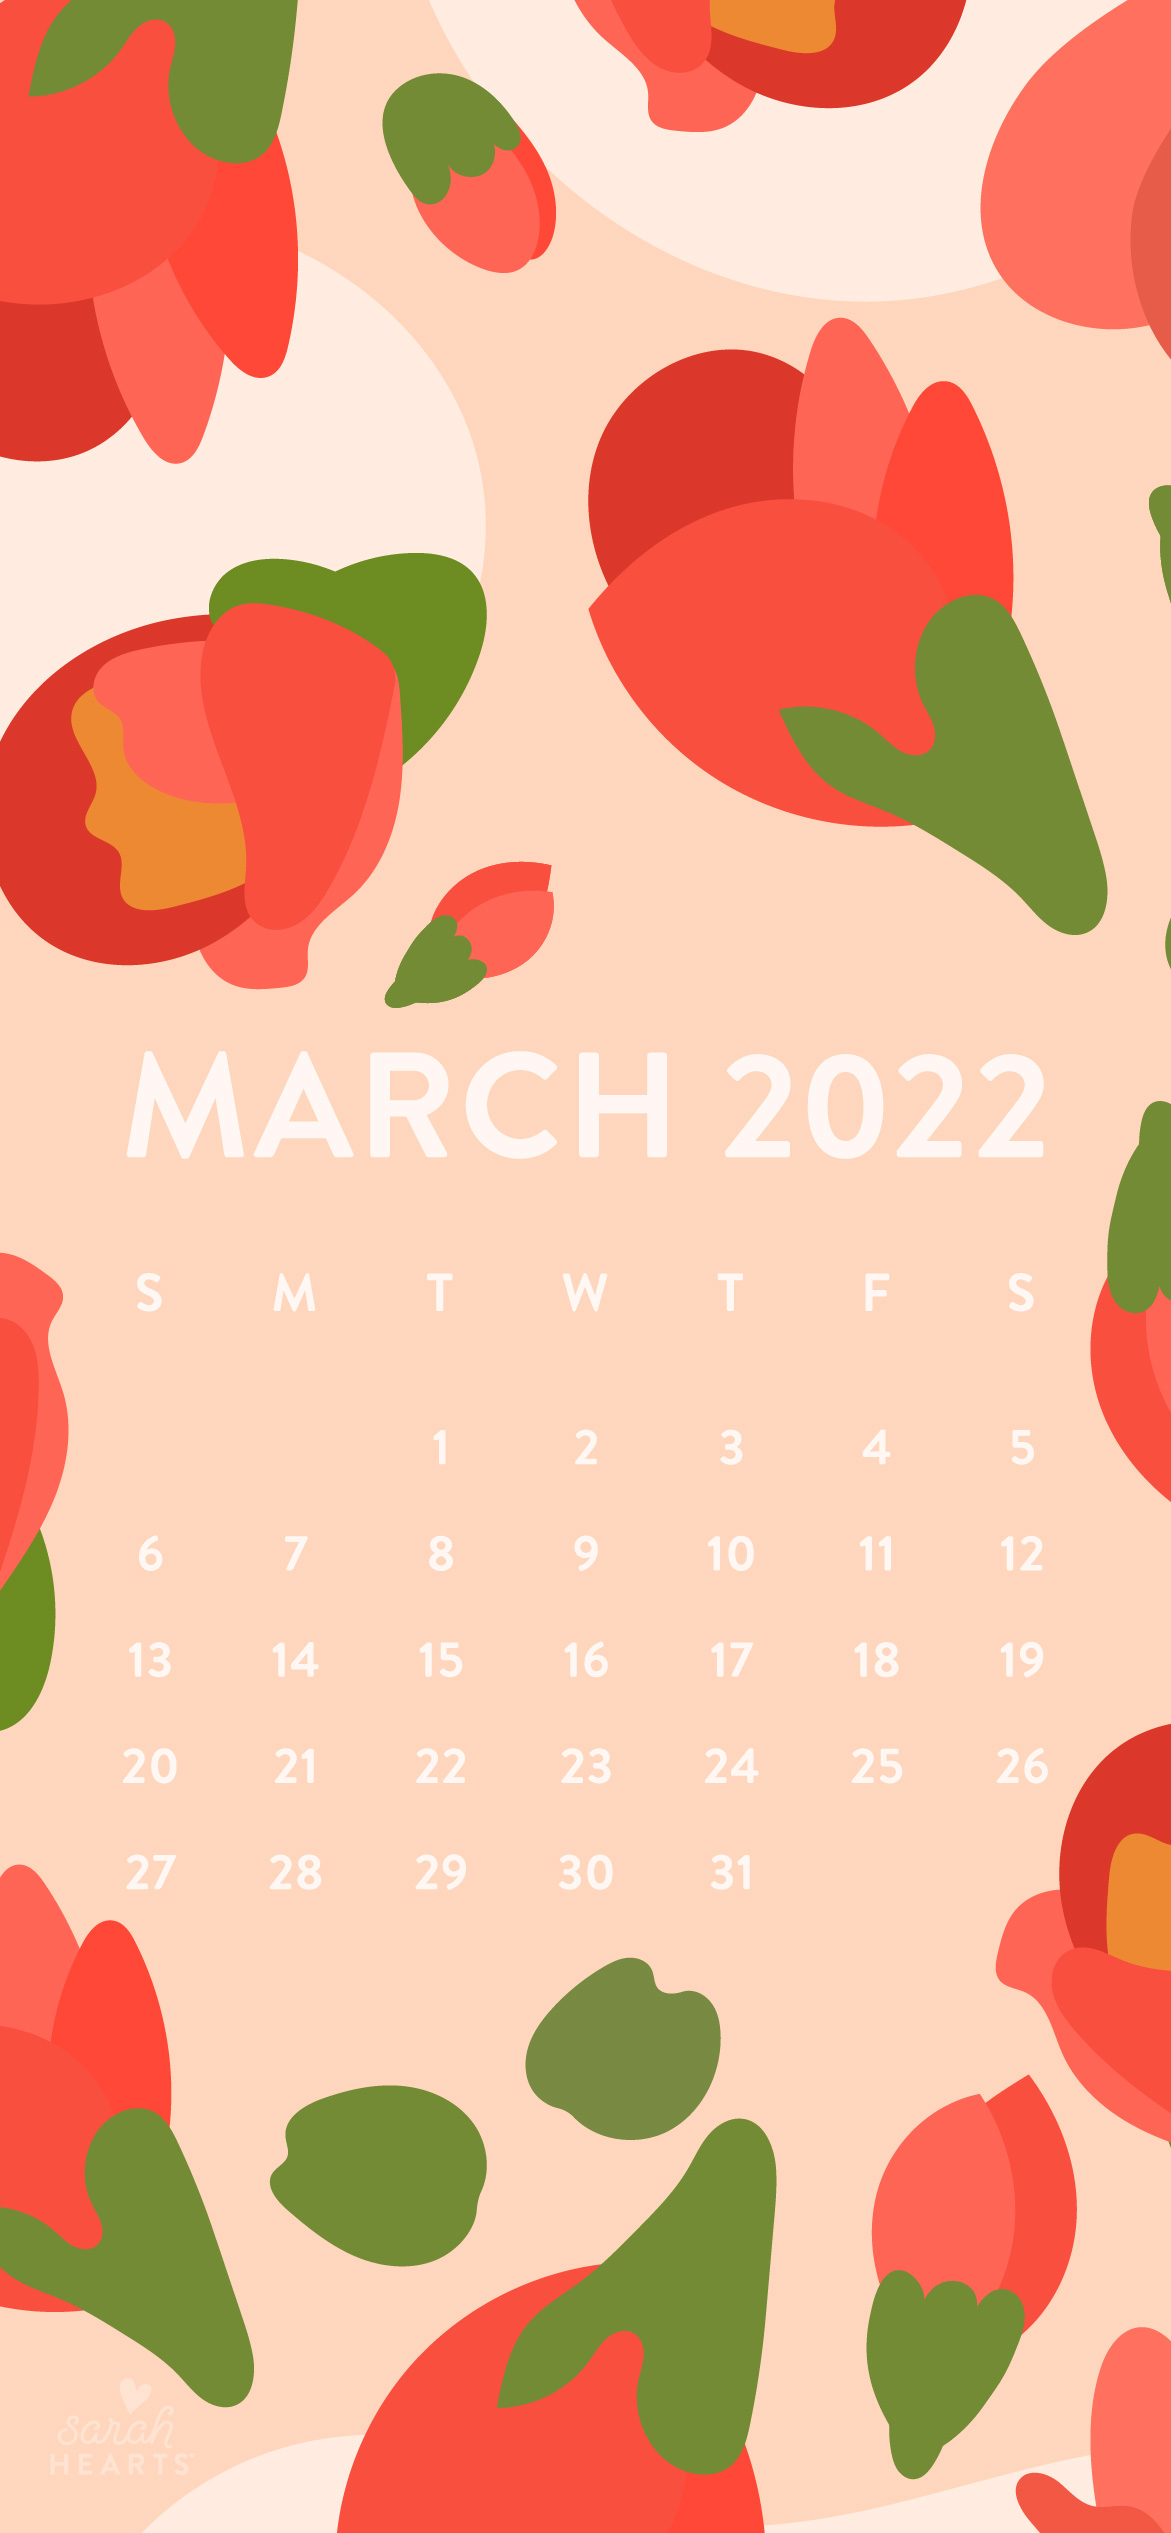 Đón chào tháng Ba năm 2022 với một lịch tháng 3 vô cùng tuyệt đẹp. Với các thông tin về ngày lễ, ngày nghỉ, bạn sẽ có một kế hoạch tuyệt vời cho cả tháng. Nhấn vào hình ảnh để xem ngay lịch tháng 3 năm 2022!